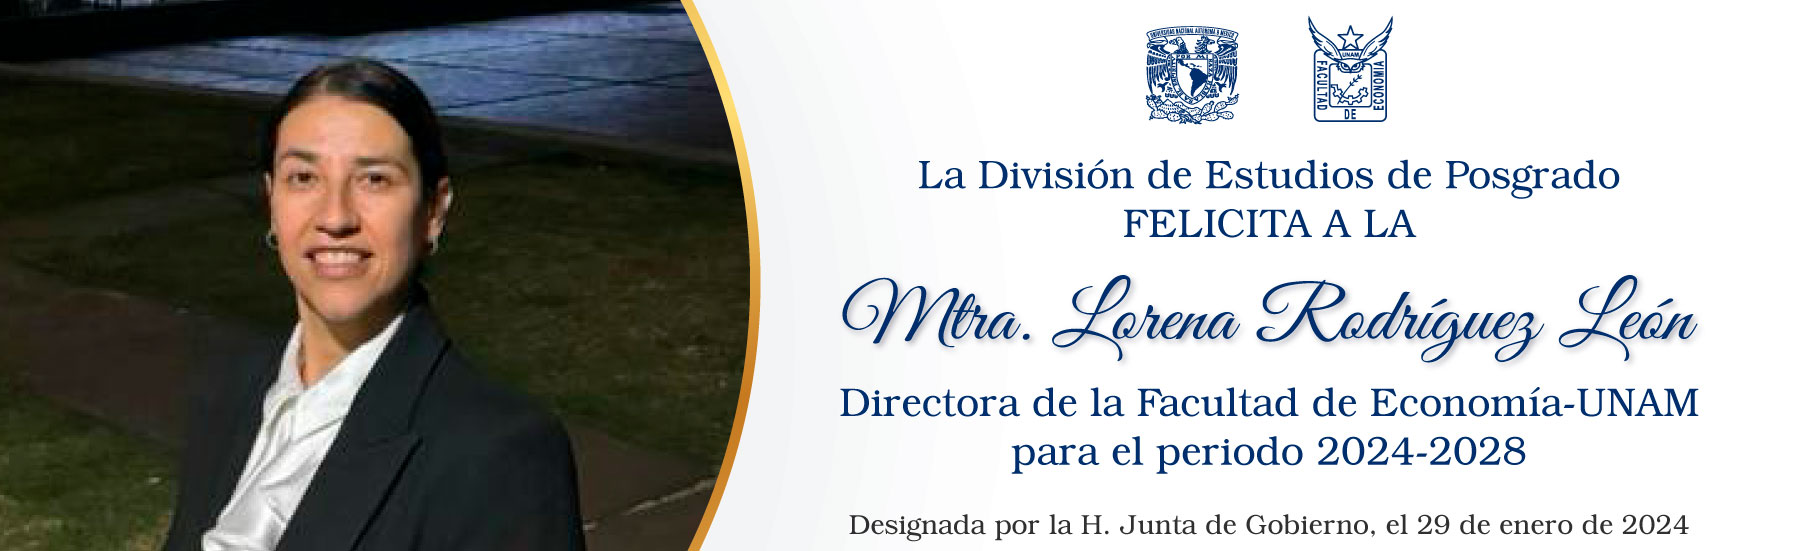 La División de Estudios de Posgrado felicita a la Mtra. Lorena Rodríguez León, Directora de la Facultad de Economía-UNAM, para el periodo 2024-2028